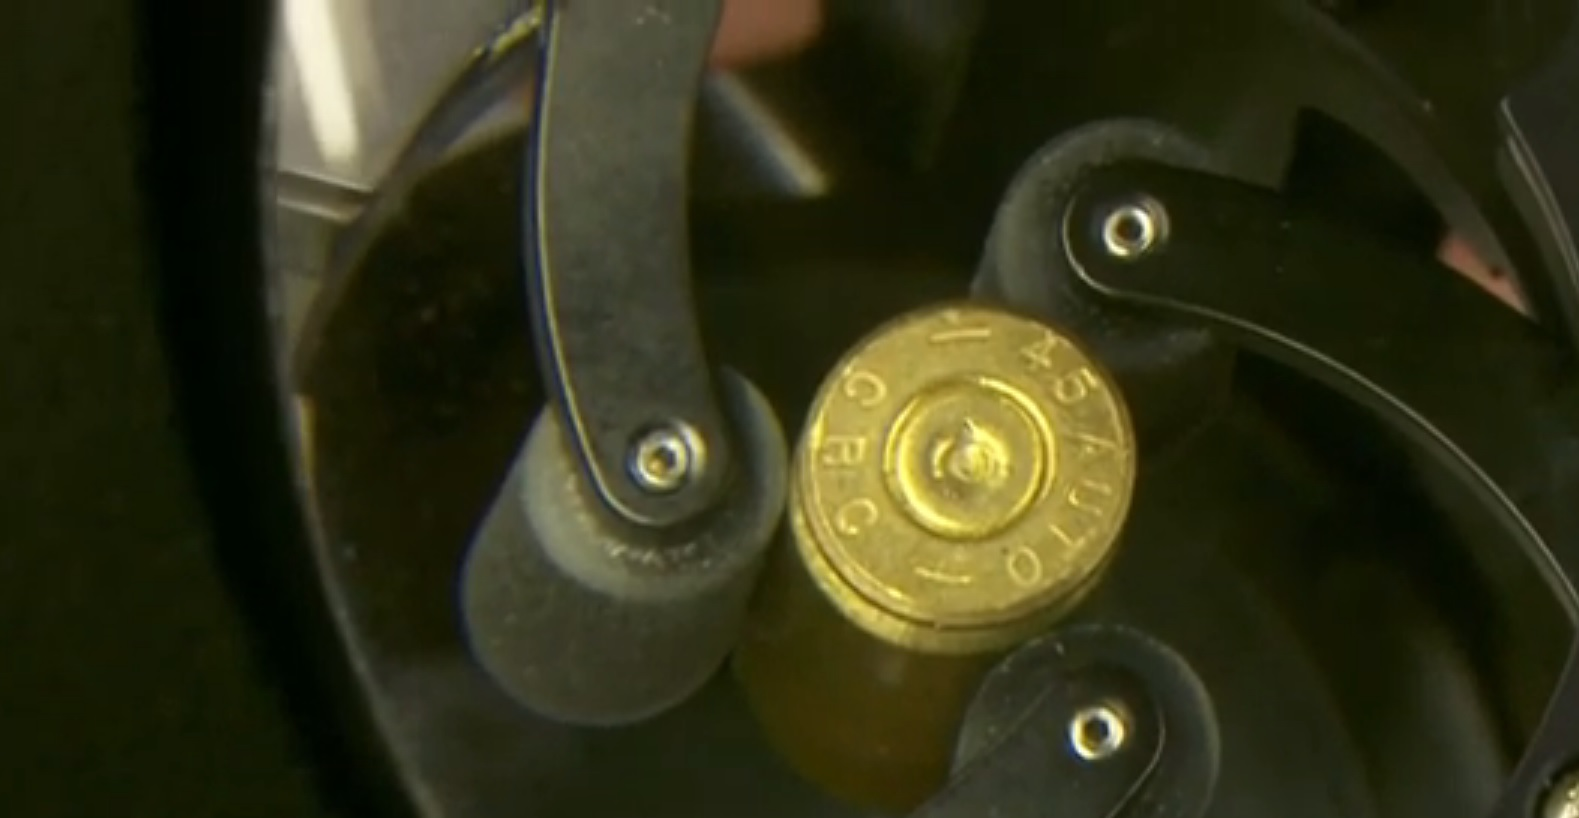 Sistema para identificar balas usadas em armas ajuda a esclarecer crimes